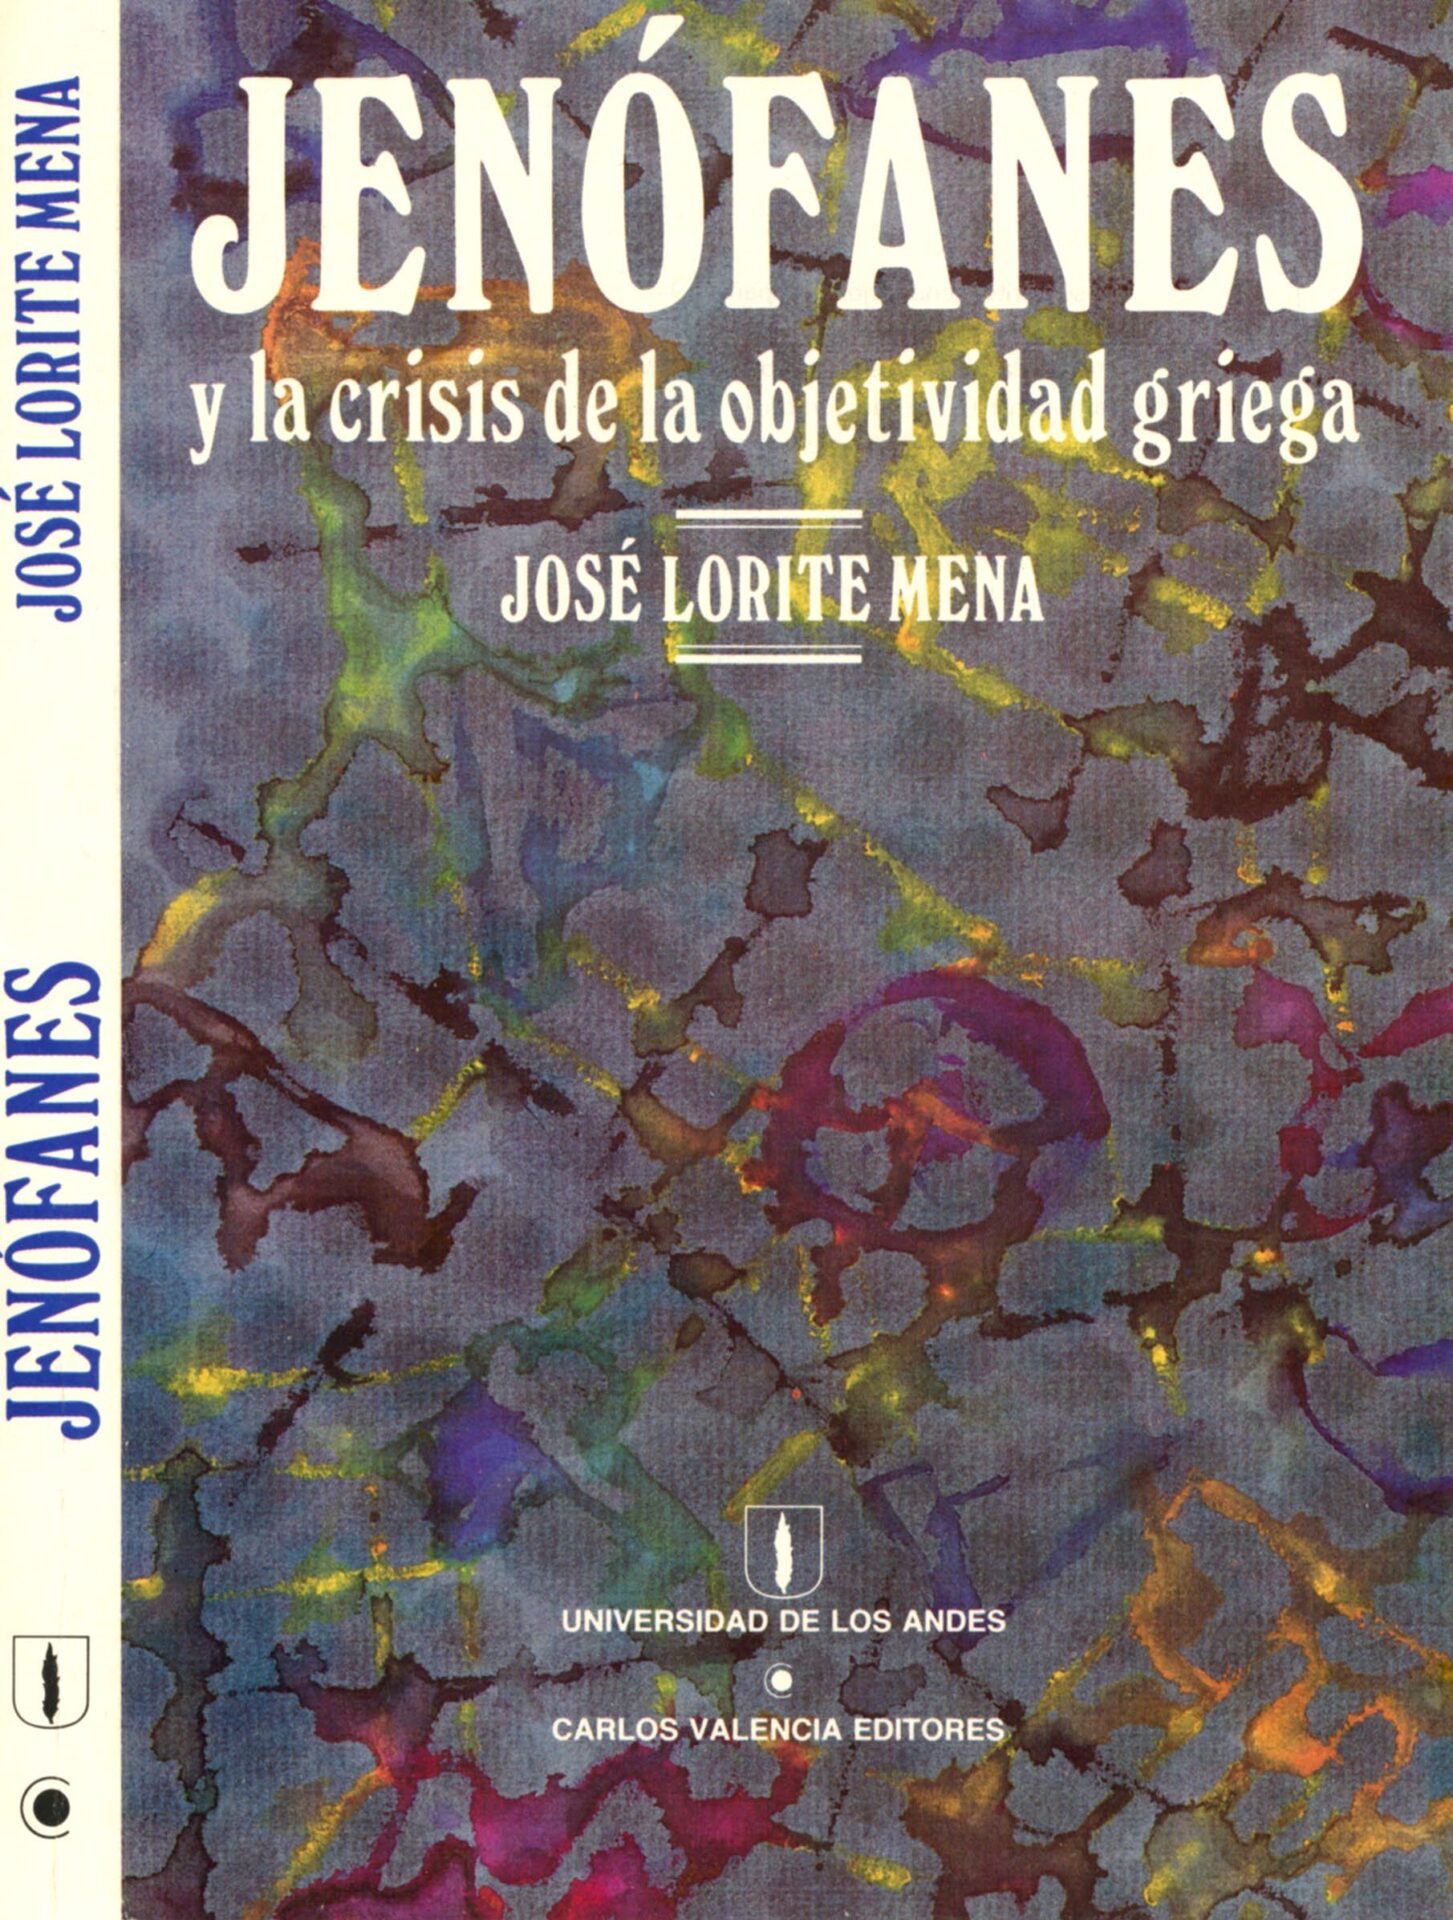 Lorite Mena. José. Jenófanes y la Crisis de la Objetividad Griega. Carlos Valencia Editores y Universidad de los Andes. 1986